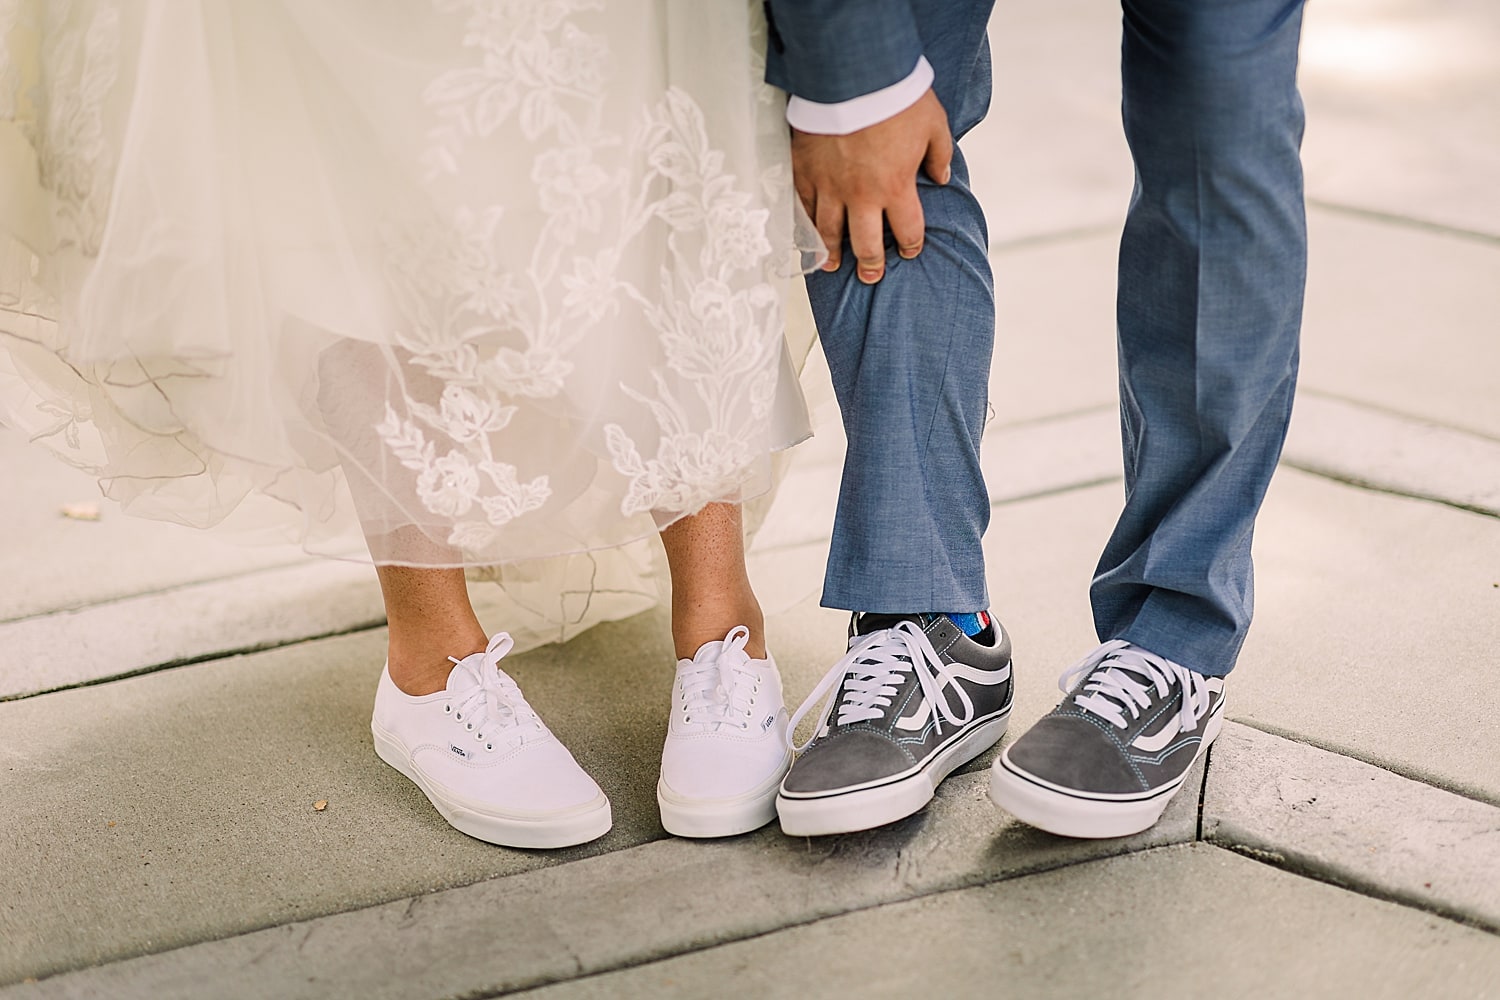 Vans wedding shoes